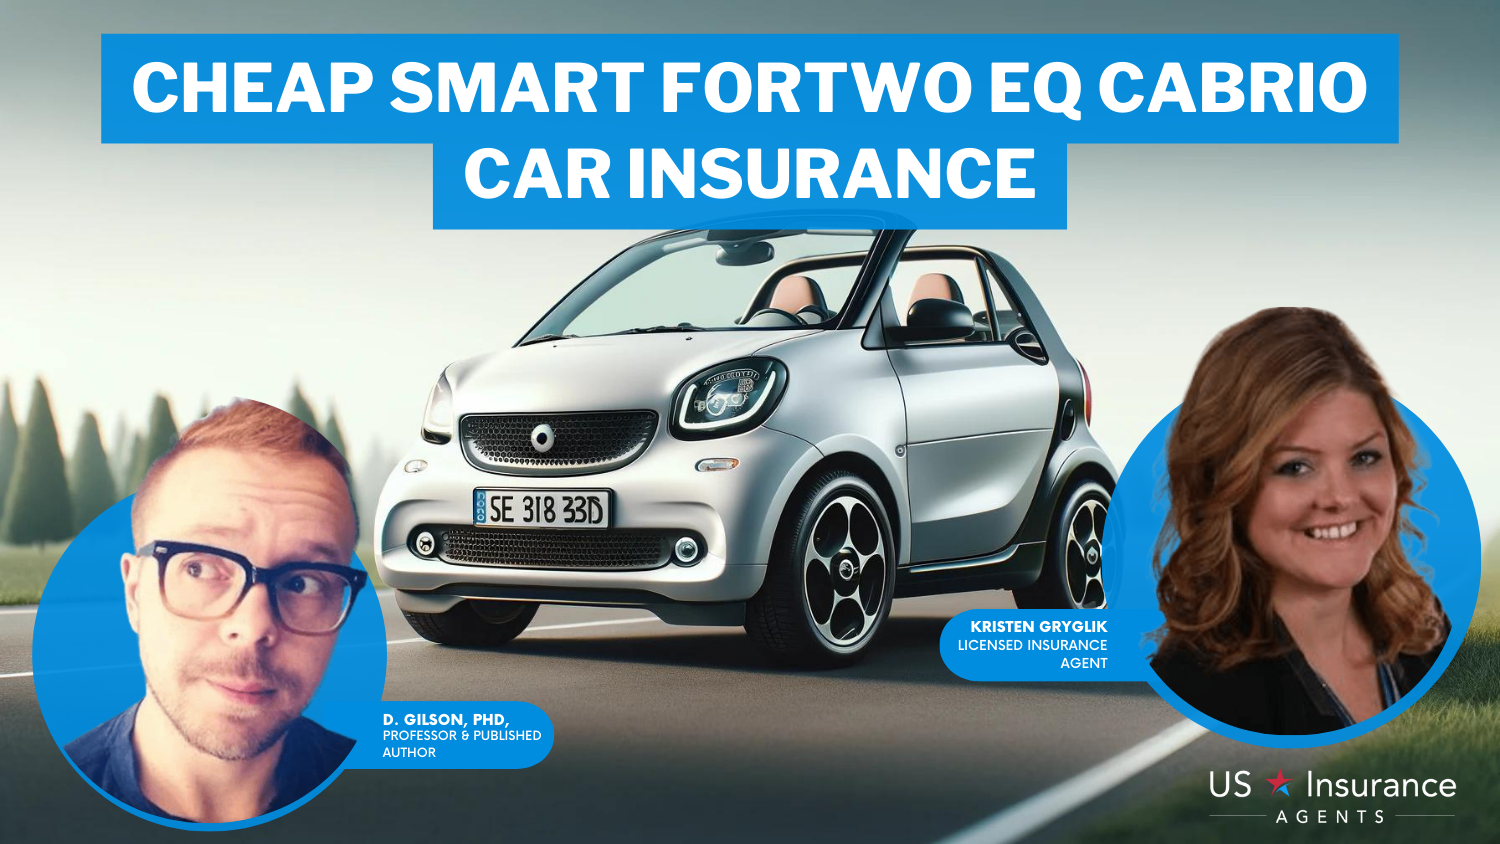 Cheap Smart Fortwo EQ Cabrio Car Insurance: Allstate, Farmers, and Progressive